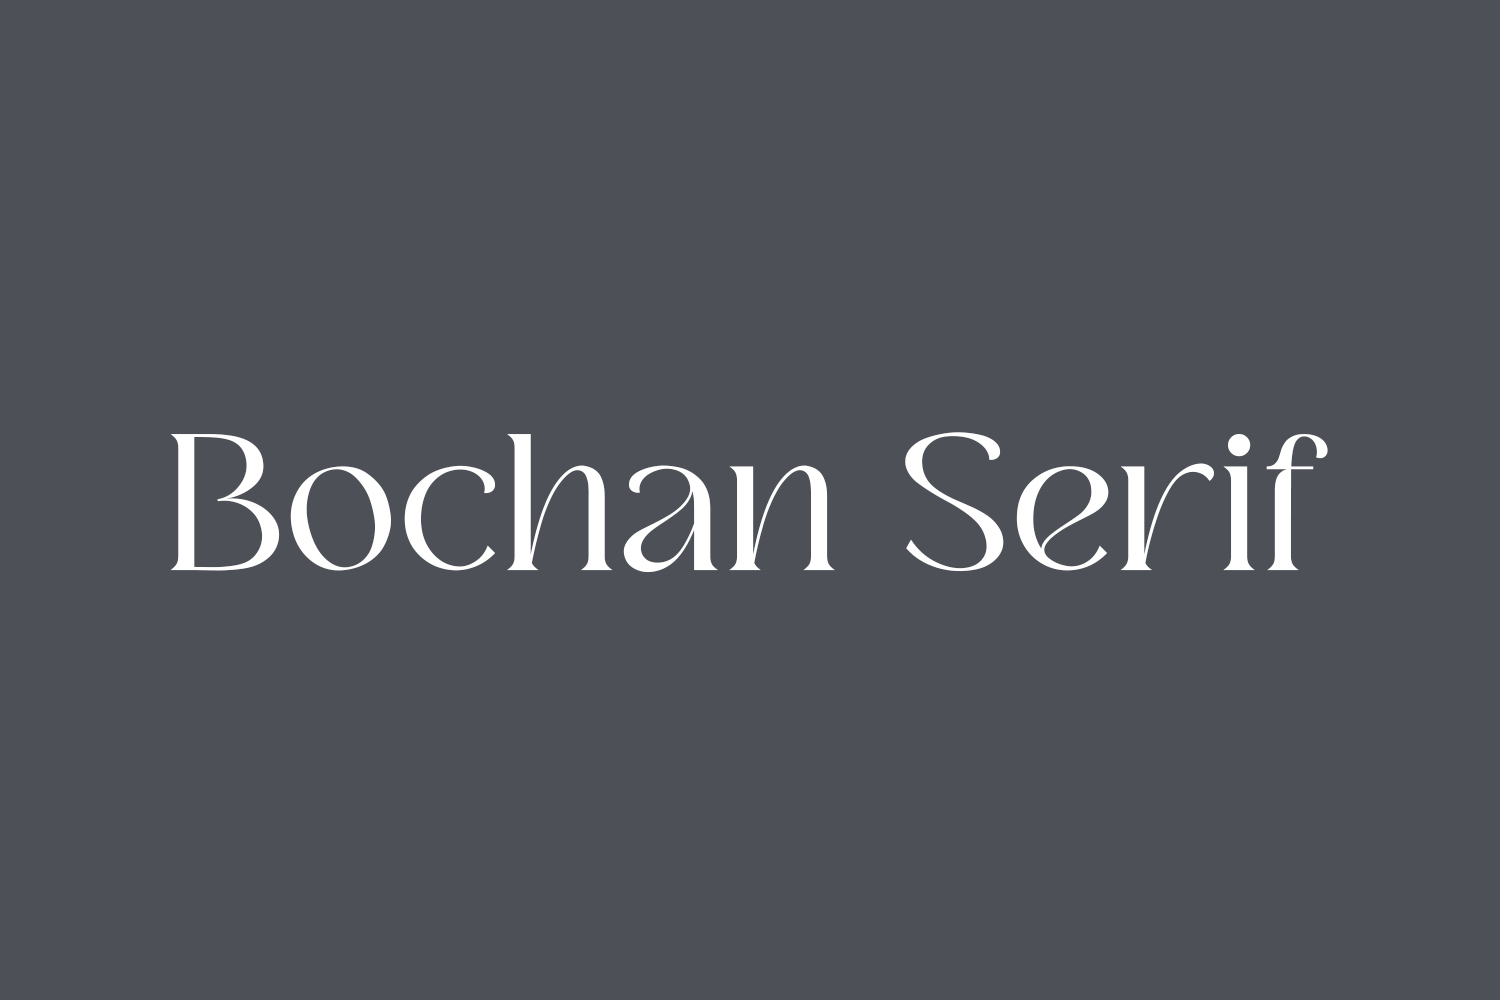 Bochan Serif Free Font